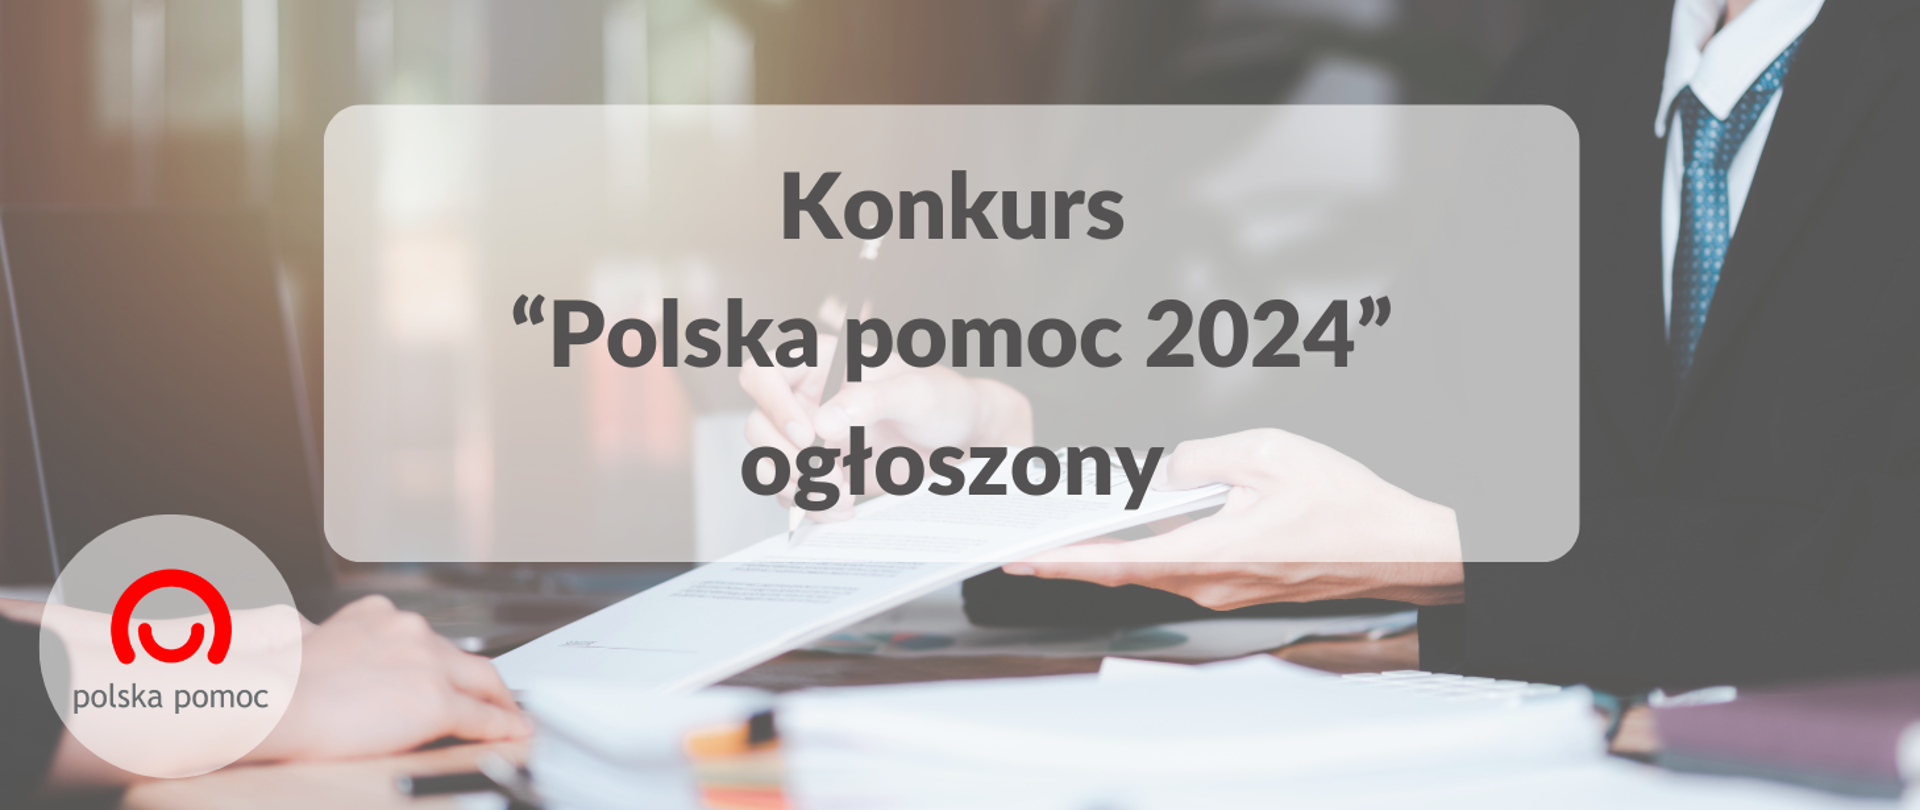 Grafika z napisem "Konkurs Polska pomoc 2024 ogłoszony"